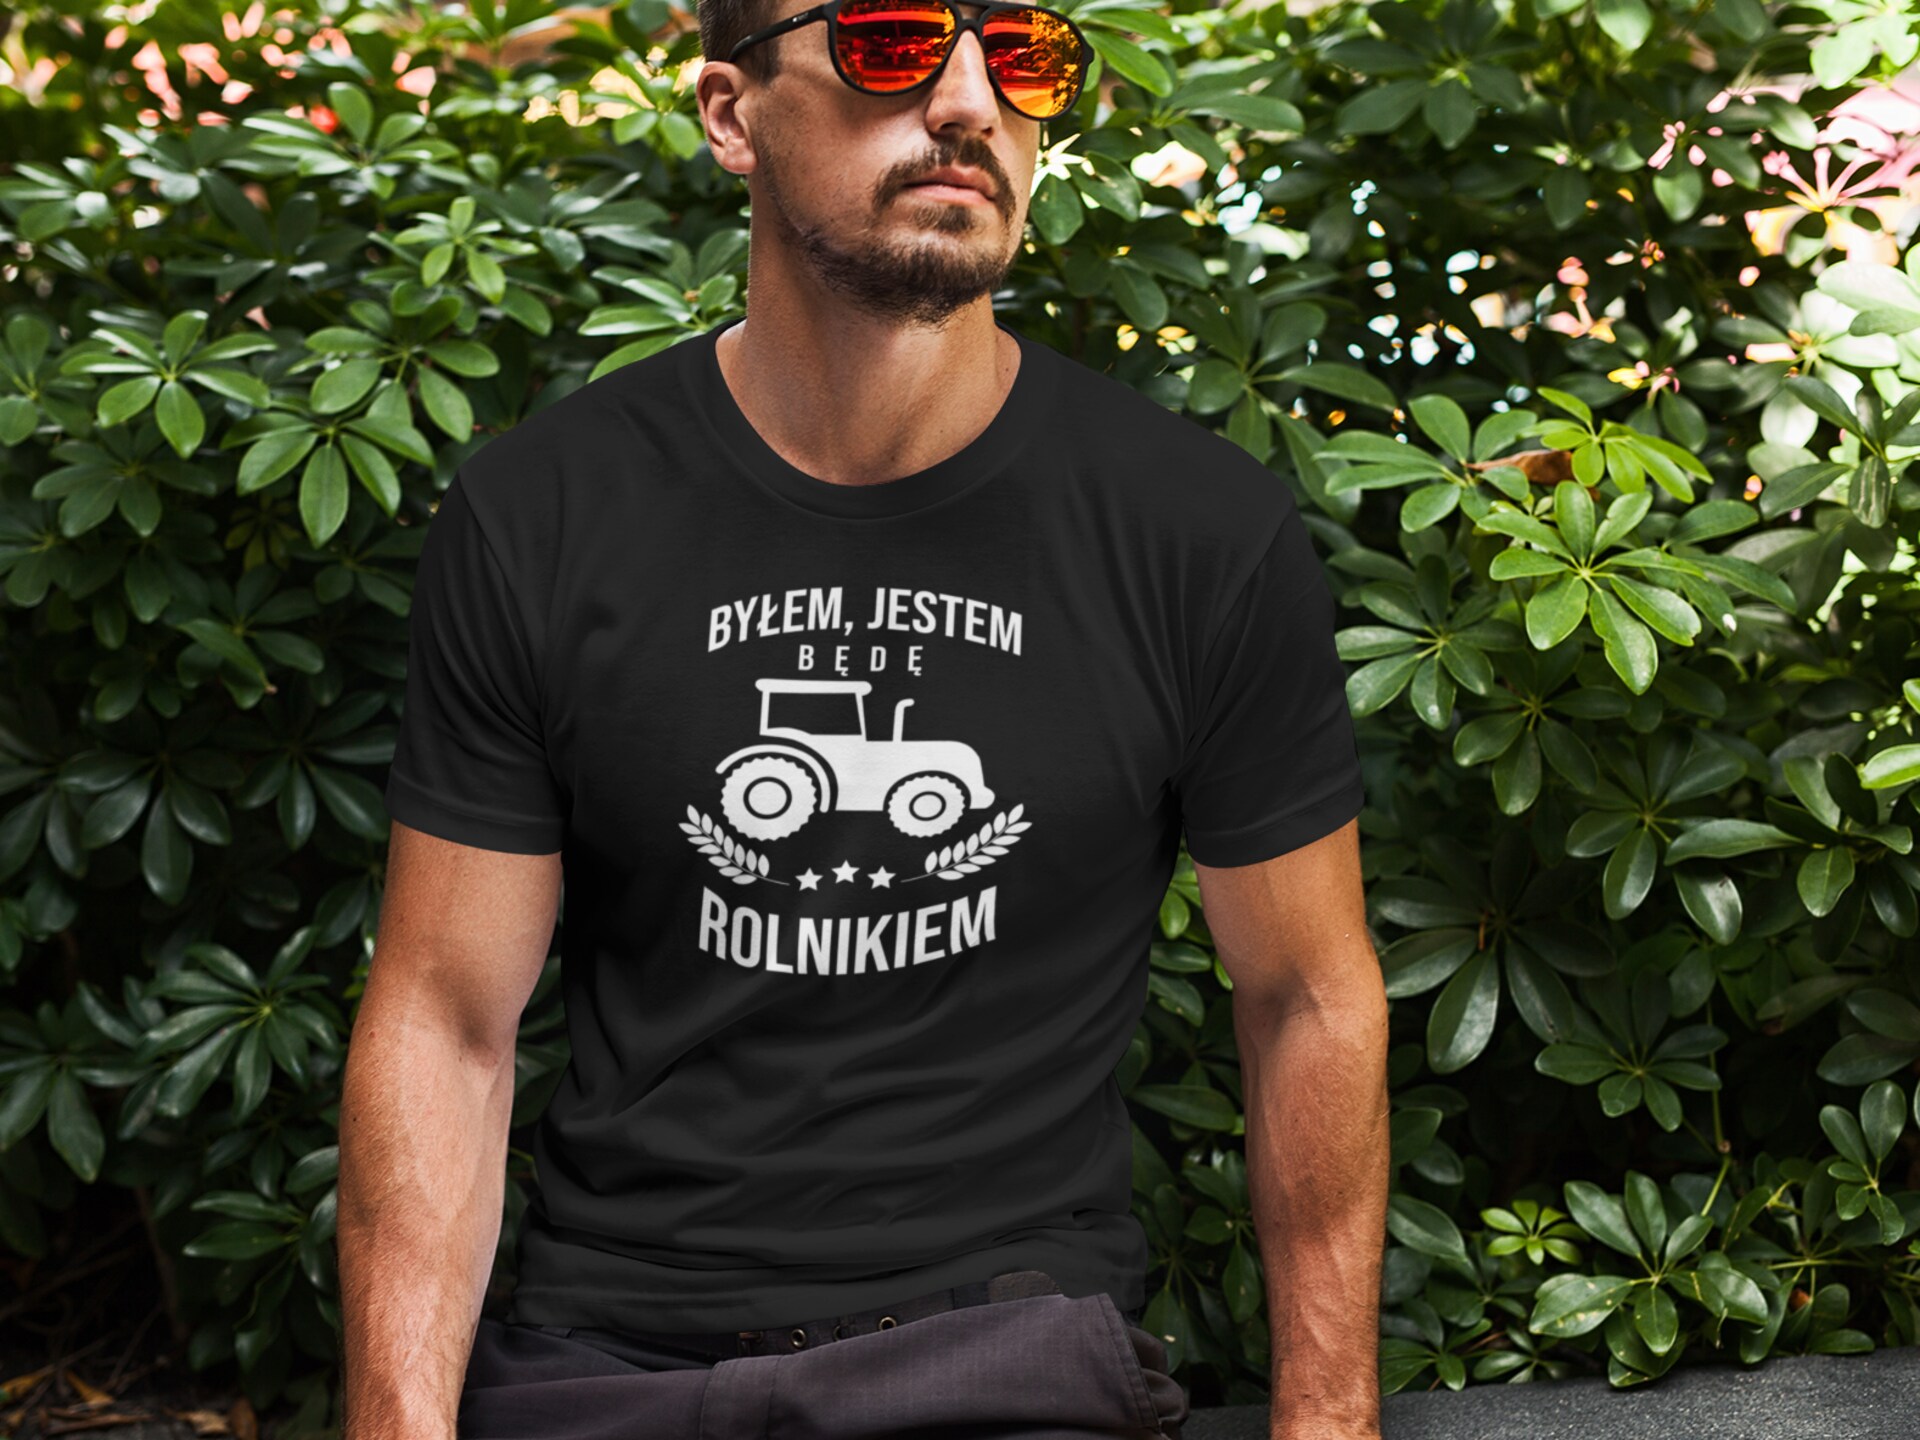 Prosty sposób na prezent dla motocyklisty, spraw mu koszulkę!